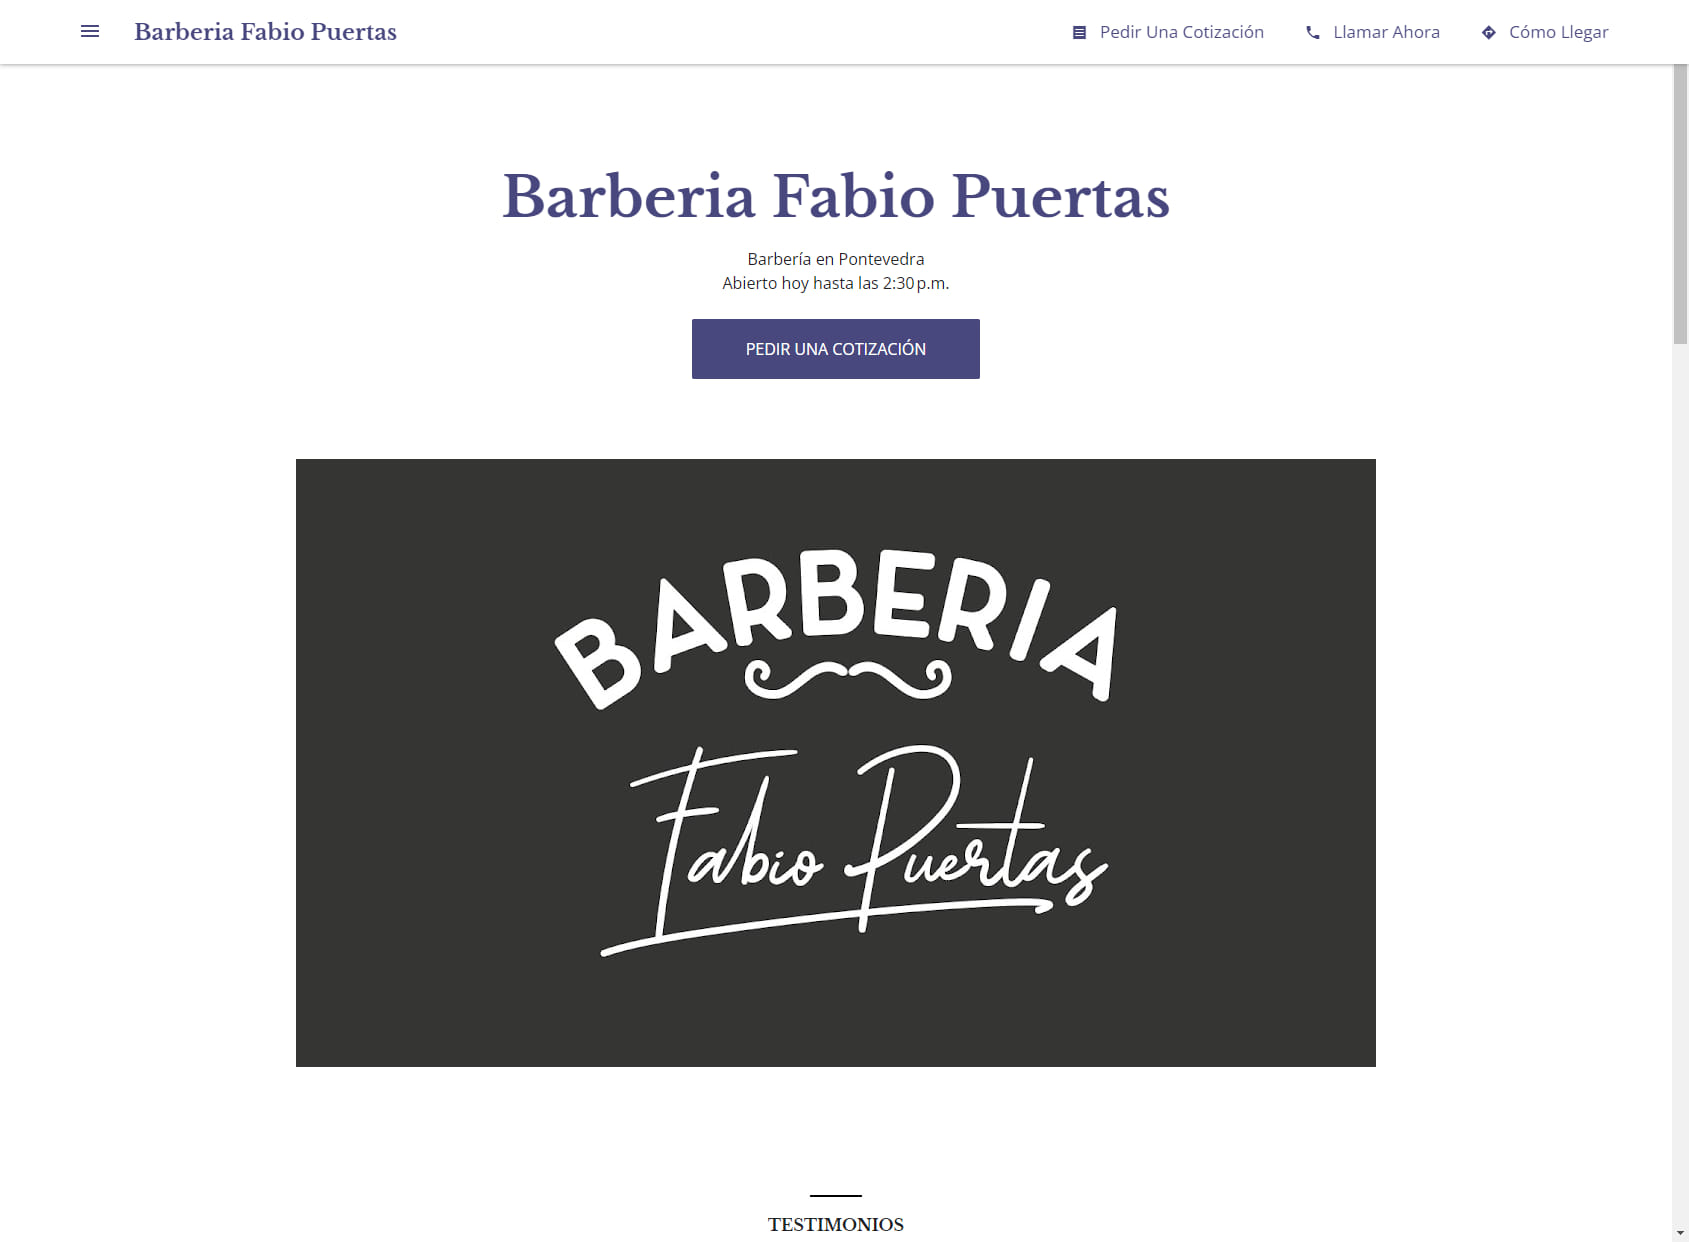 Barberia Fabio Puertas